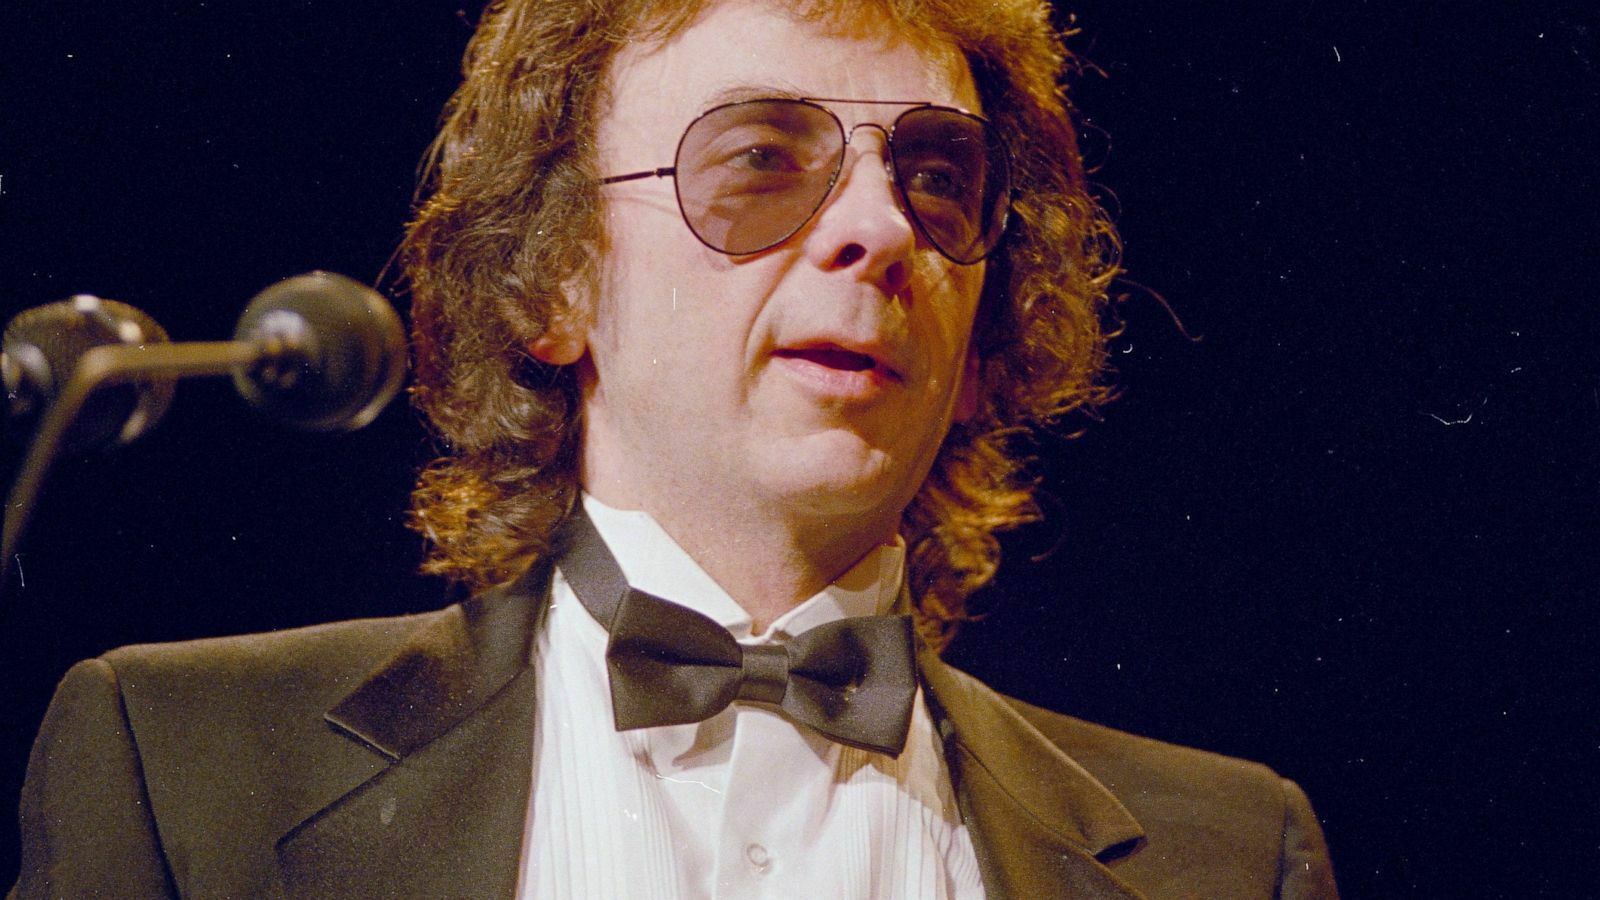 Фил Спектор, саундпродюсер The Beatles, отбывавший срок за убийство, умер от ковида